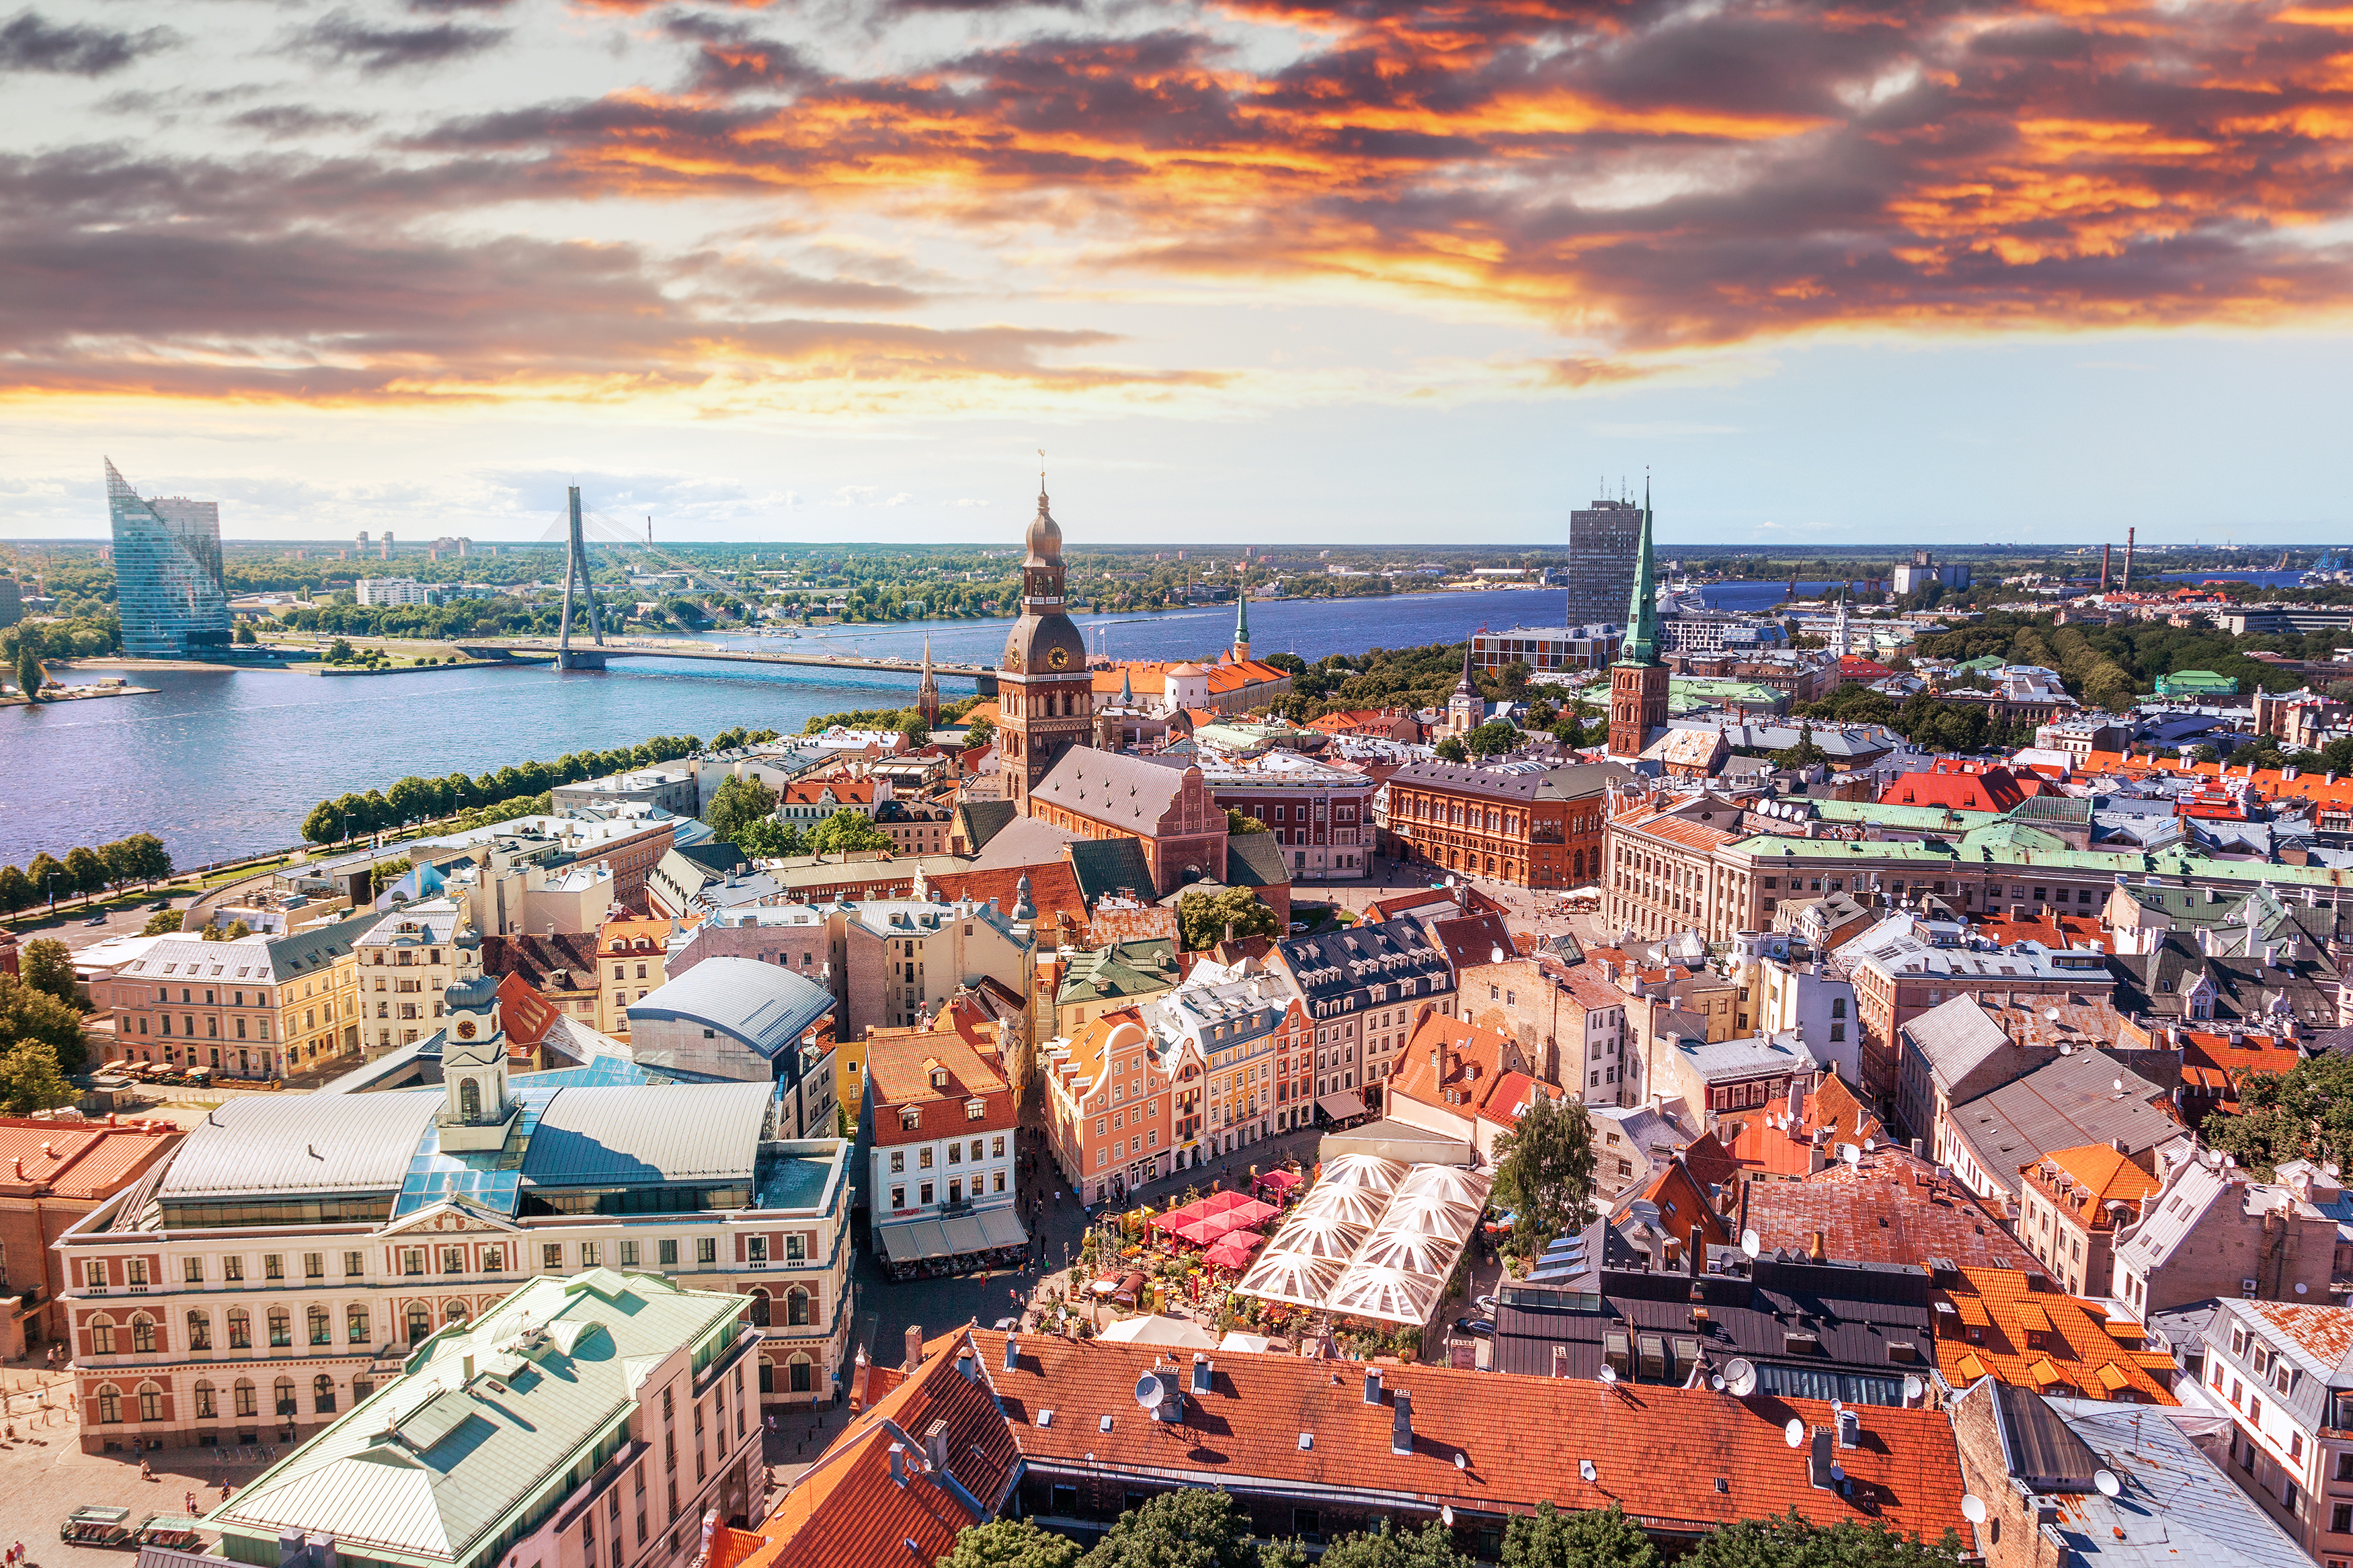 Рига, столица Латвии, ВНЖ которой могут получить россияне, украинцы и белорусы